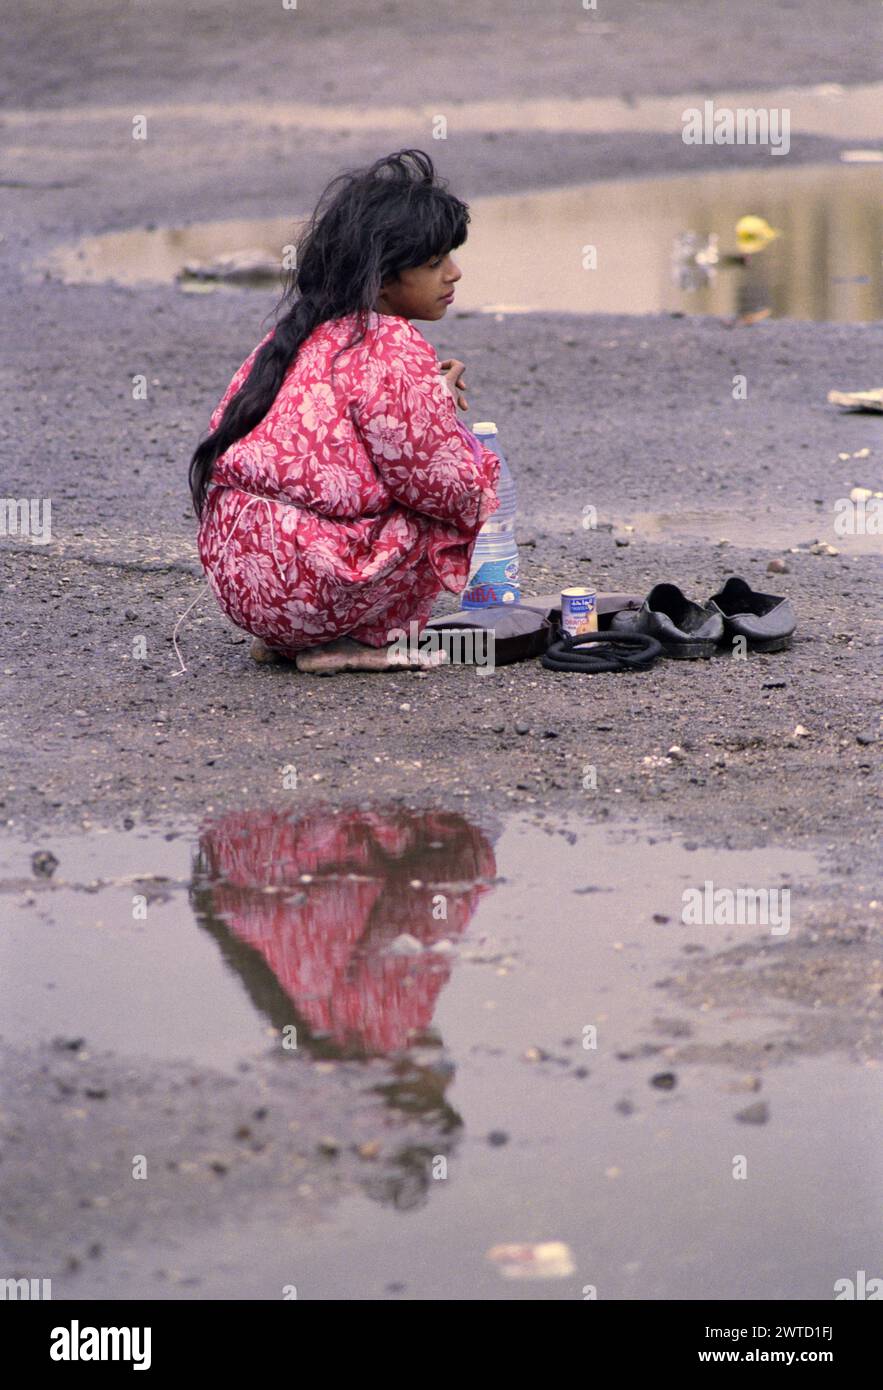 23 mars 1991 une fille irakienne squamée pieds nus parmi les flaques d'eau dans un camp de réfugiés près de Safwan dans le sud de l'Irak, près de la frontière avec le Koweït. Banque D'Images